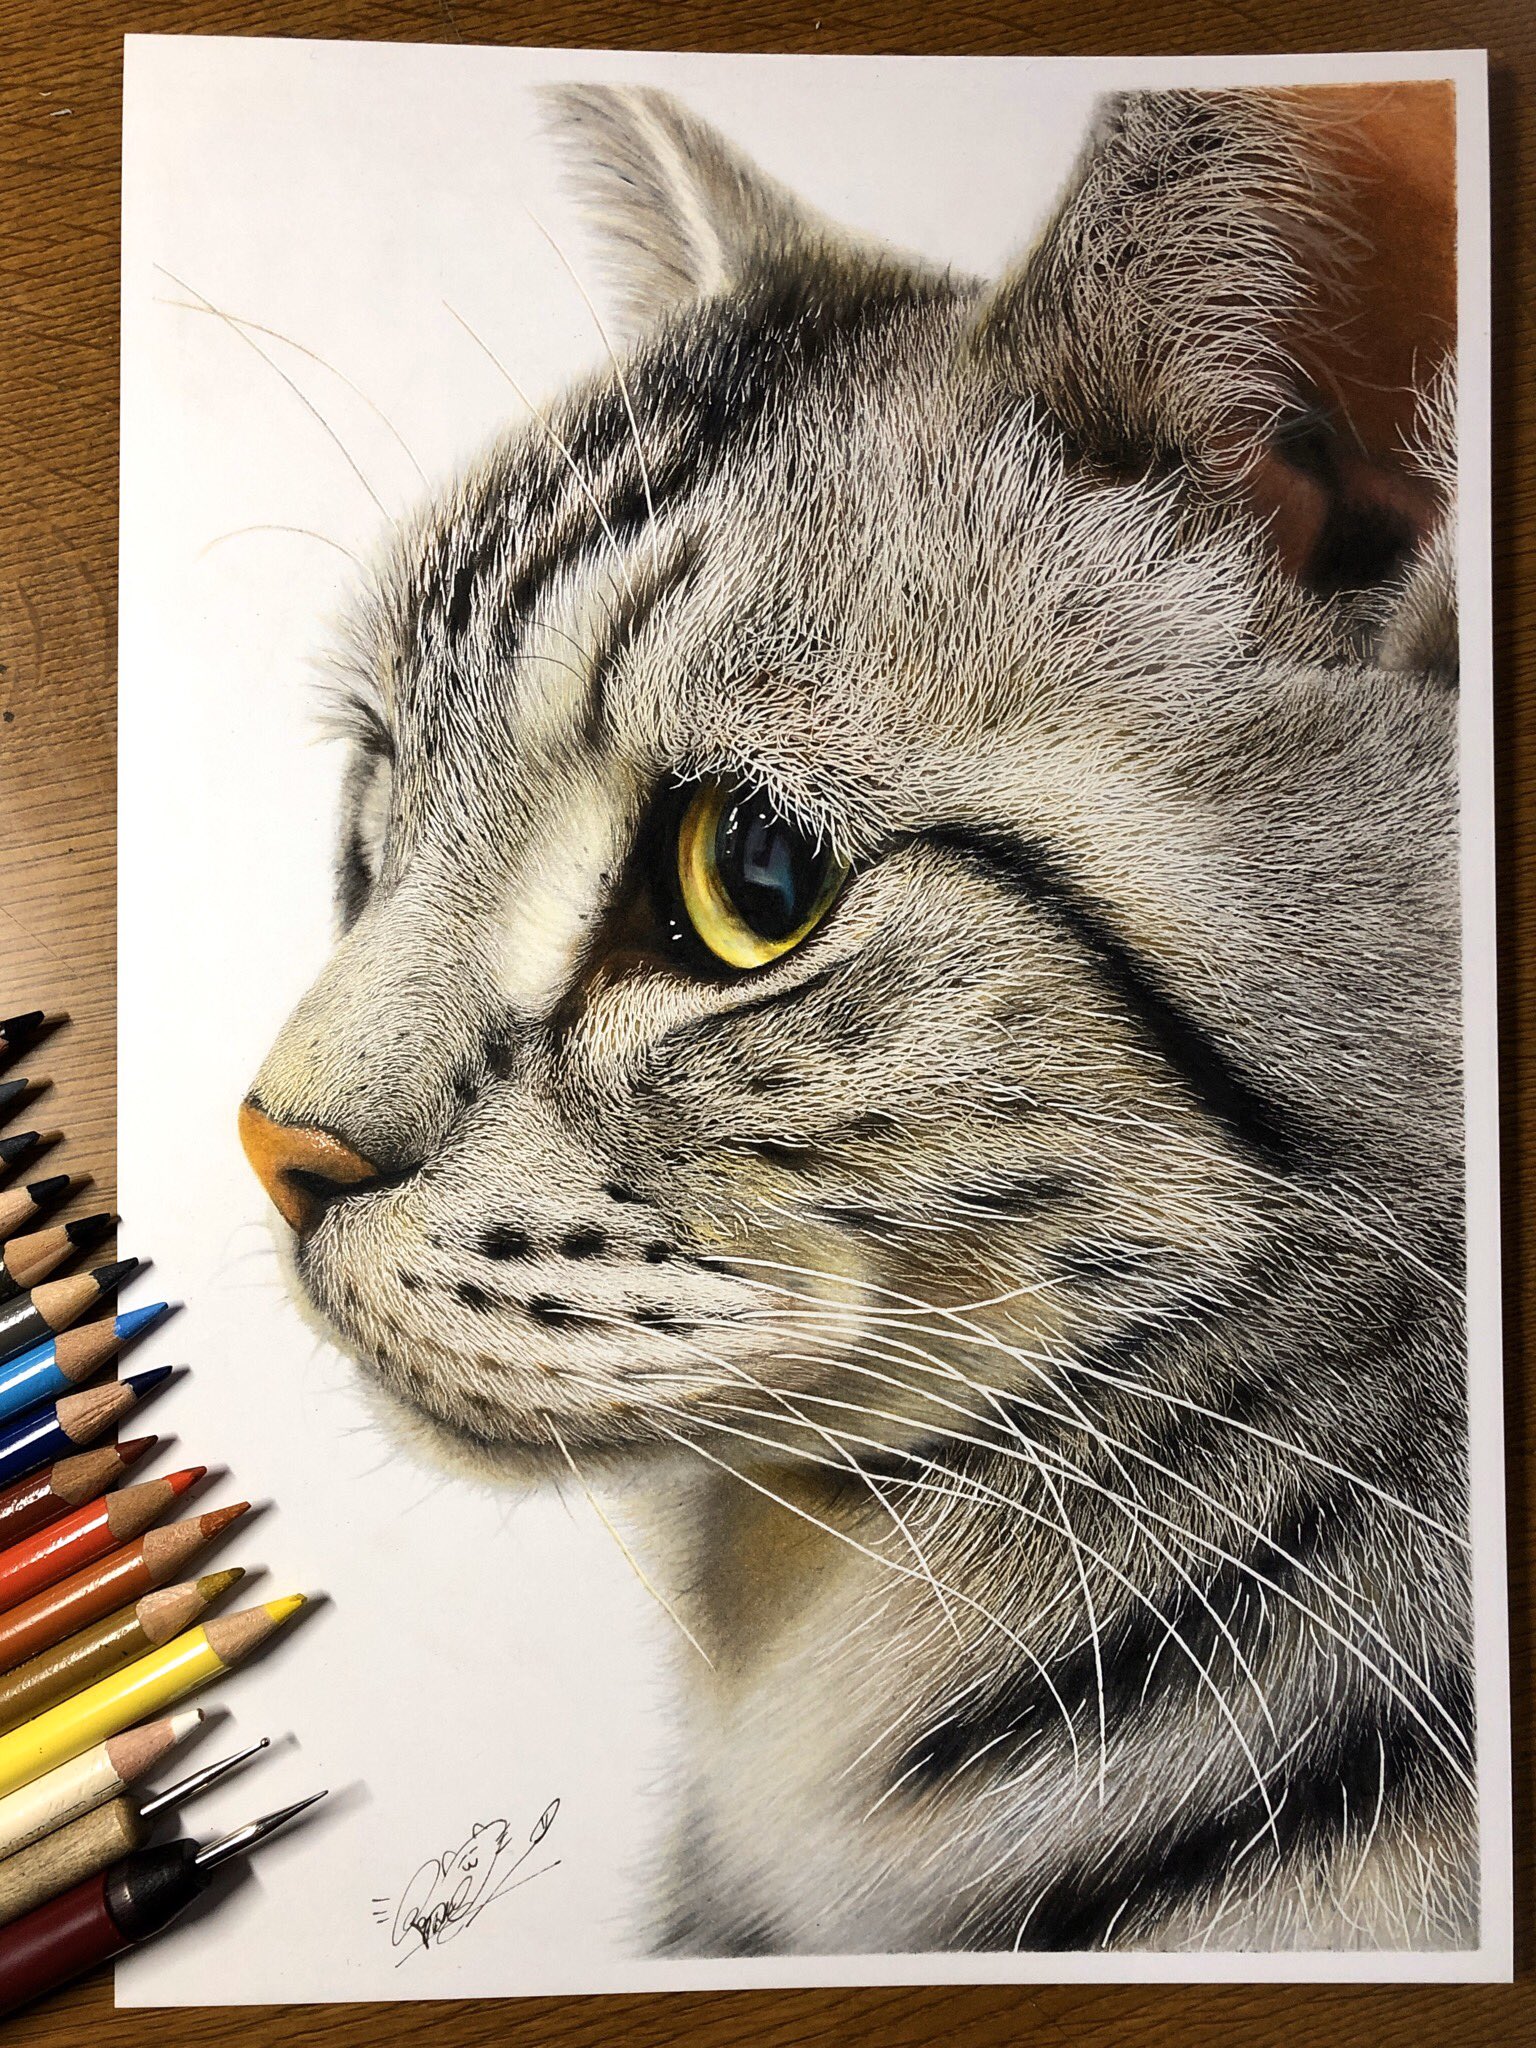 音海はる 書籍 音海はるの ねこぬりえ Book 色鉛筆で猫ちゃん描きました もふもふ見て下さい W T Co 8e9enj1eyu Twitter